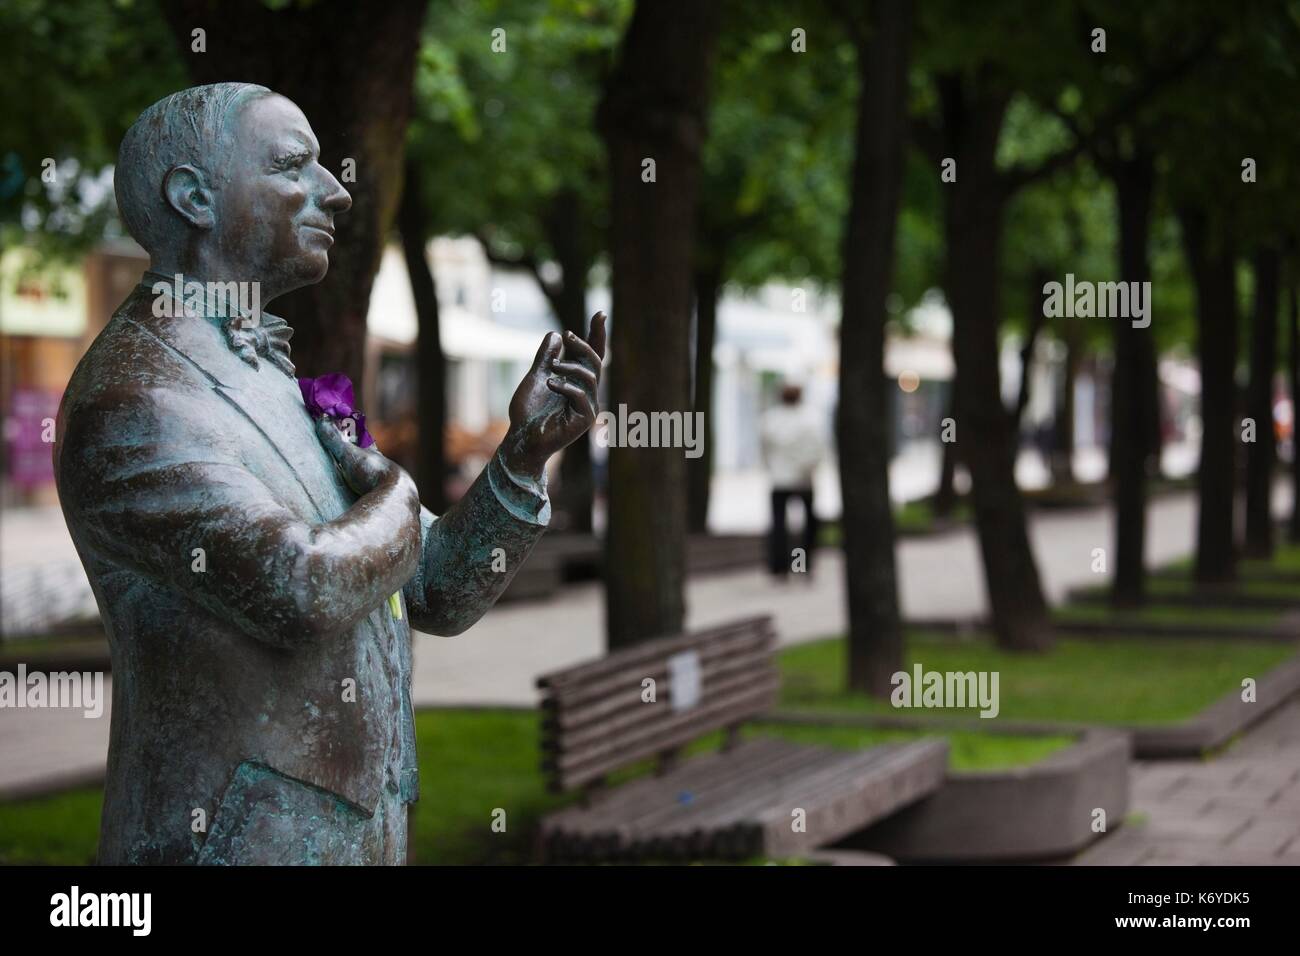 La Lituanie, Kaunas, Lituanie Centrale, rue Laisves Aleja, sculpture d'Antanas Sabaniauskas, père de théâtre Lituanien Banque D'Images